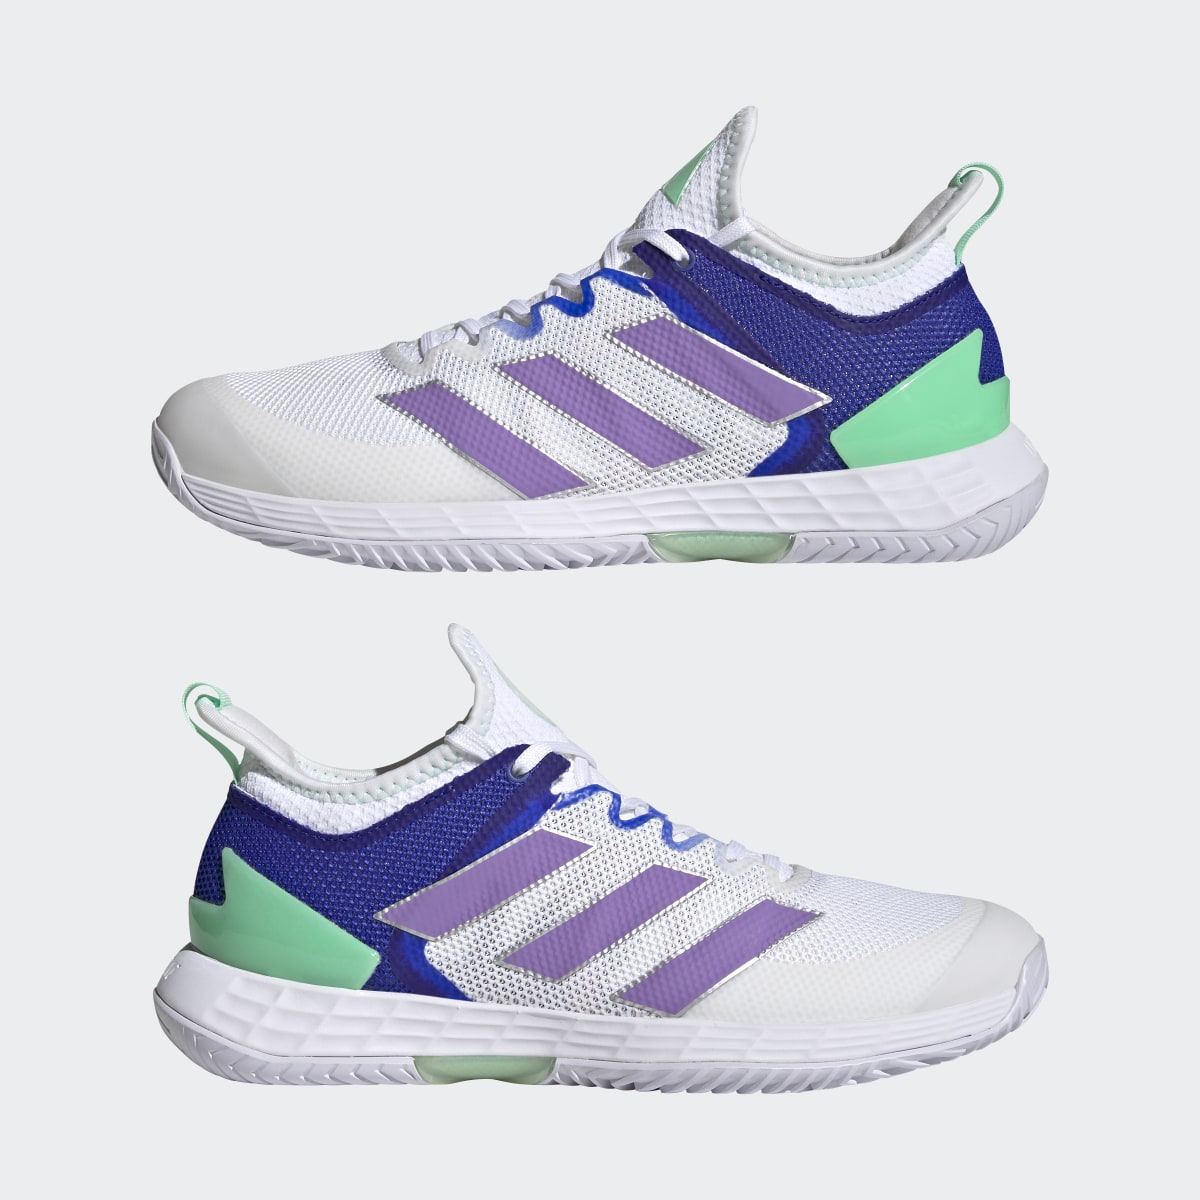 Adidas adizero Ubersonic 4 Tennis Shoes. 11